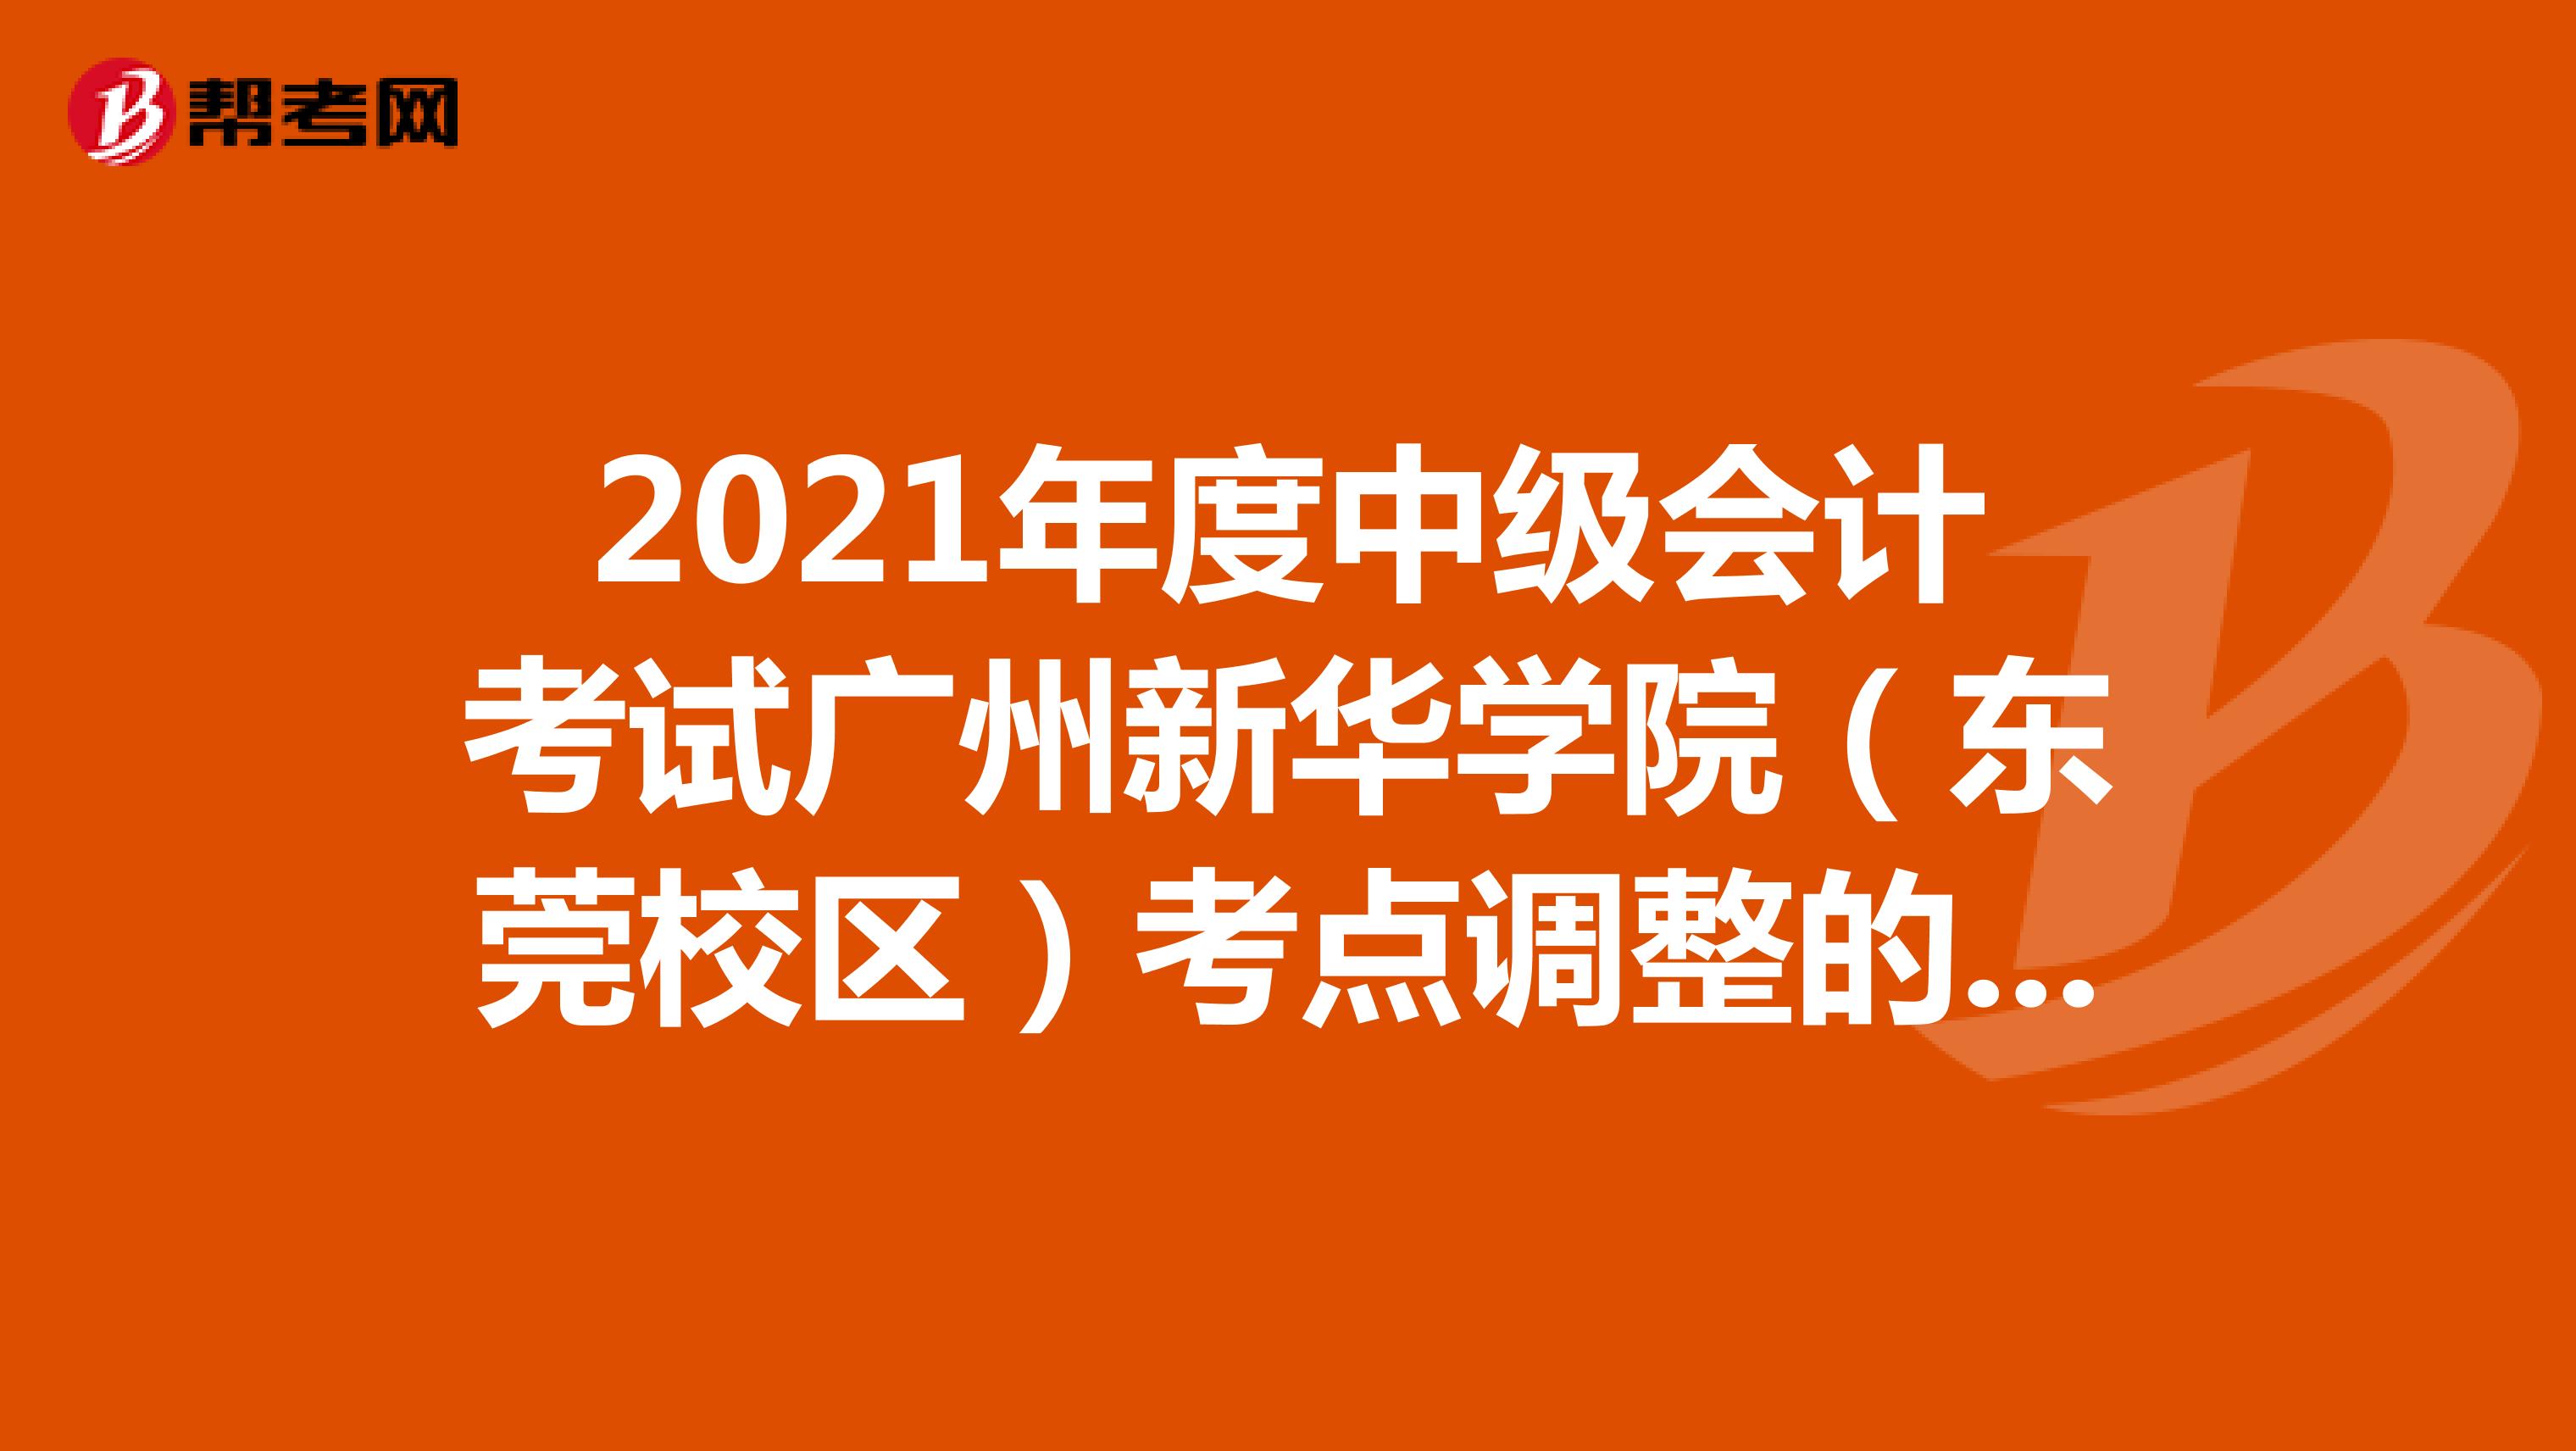 2021年度中级会计考试广州新华学院（东莞校区）考点调整的紧急公告